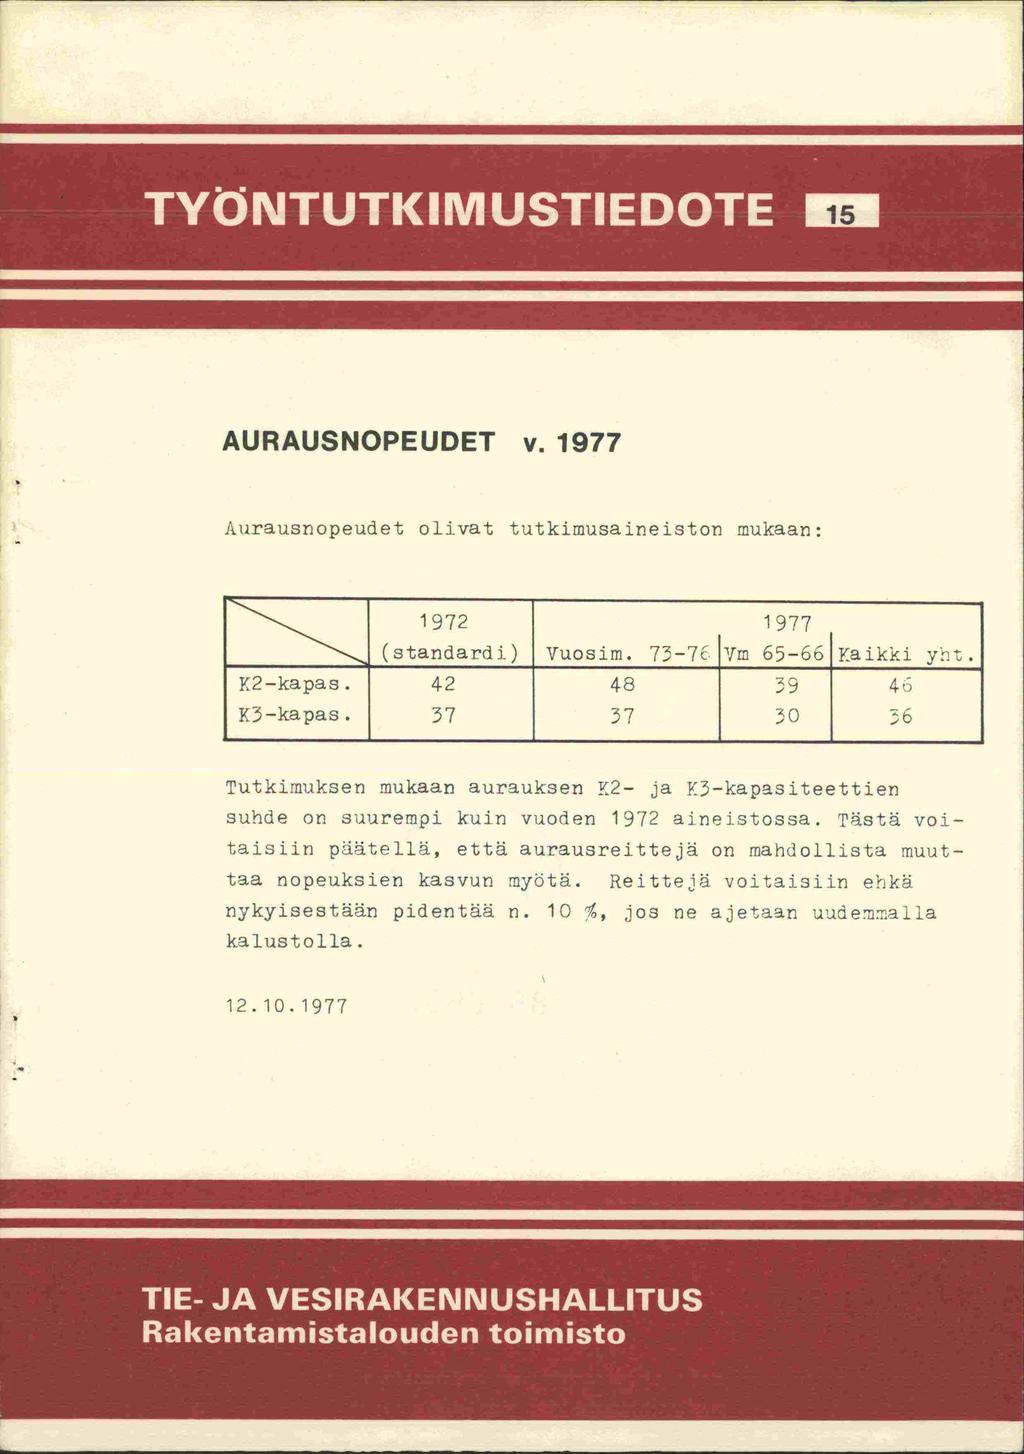 AURAUSNOPEUDET v. 1977 Aurausnopeudet olivat tutkimusaineiston mukaan: 1972 1977 (standardi) \ruosim. 73-76 Ym 65-66 Kaikki yht. K2-kapas. 42 48 39 4 K3-kapas.